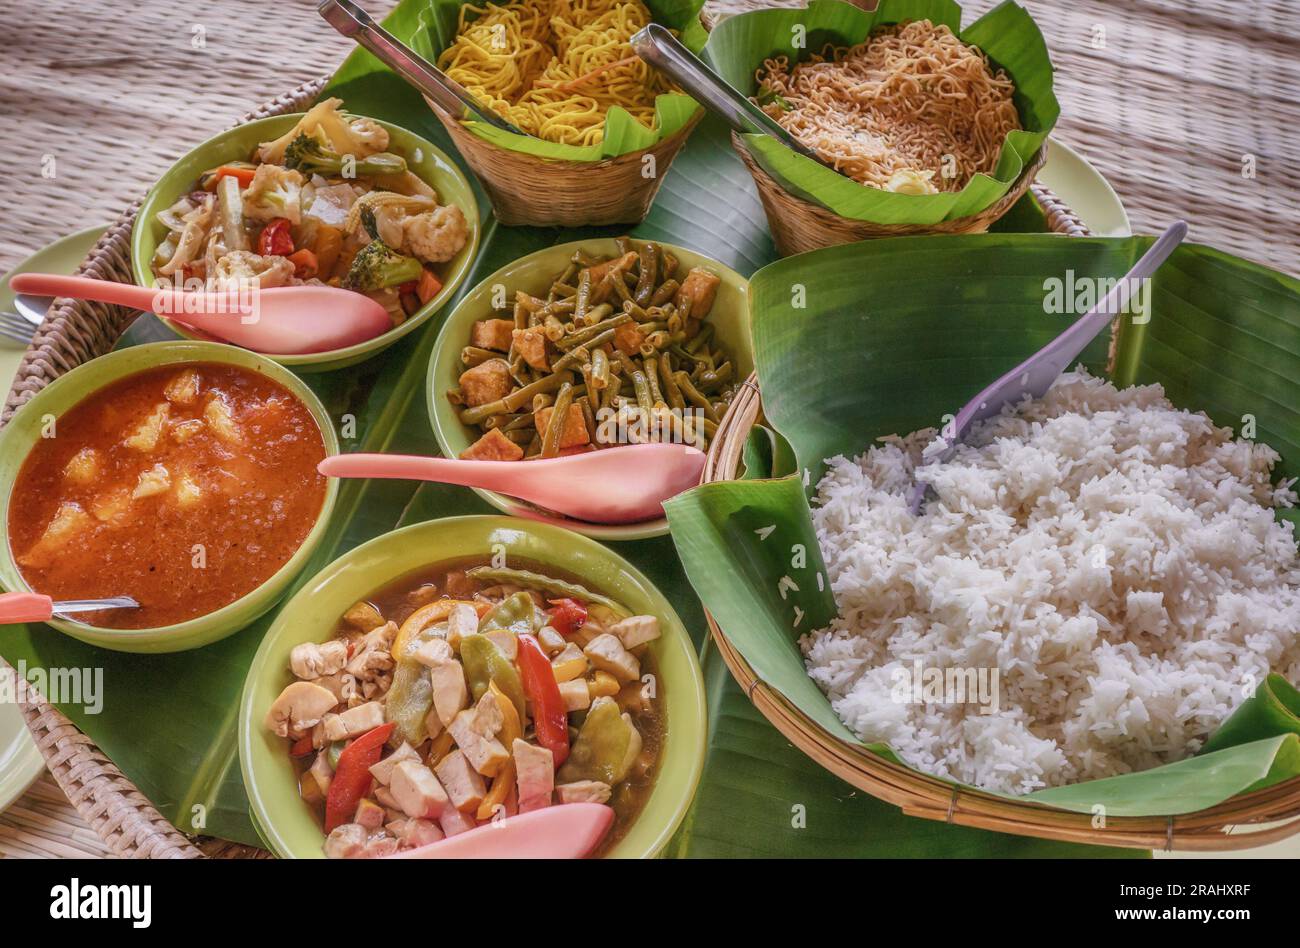 Ein Mittagessen mit frischen und leckeren thailändischen vegetarischen Gerichten. Stockfoto